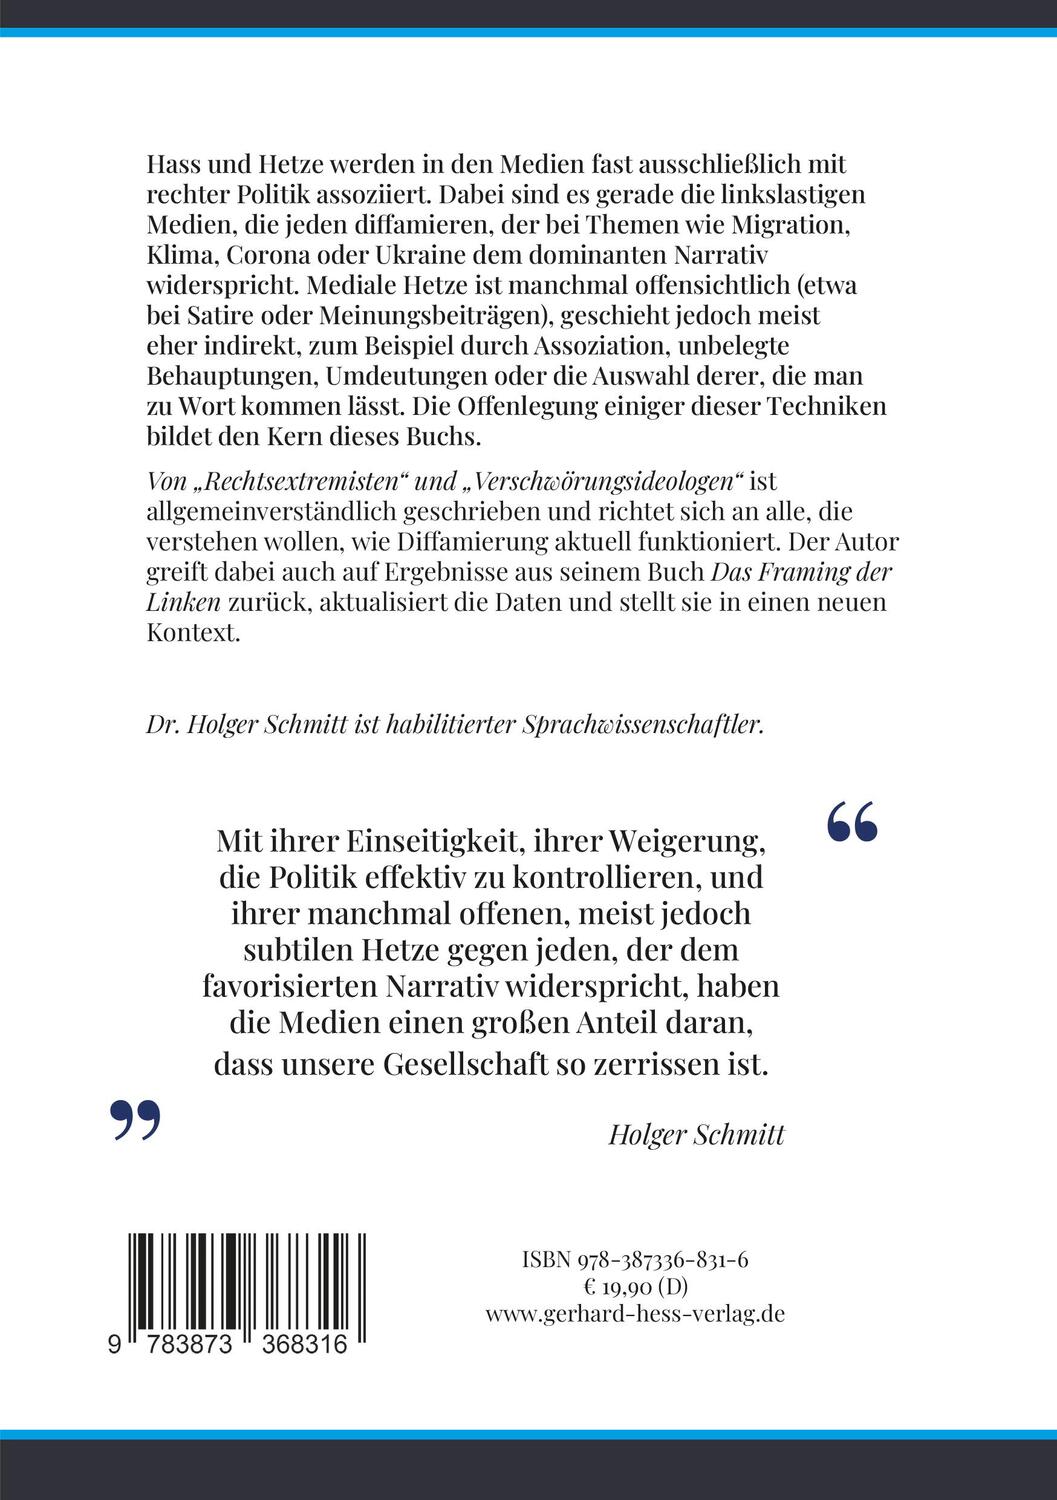 Rückseite: 9783873368316 | Von "Rechtsextremisten" und "Verschwörungsideologen" | Holger Schmitt